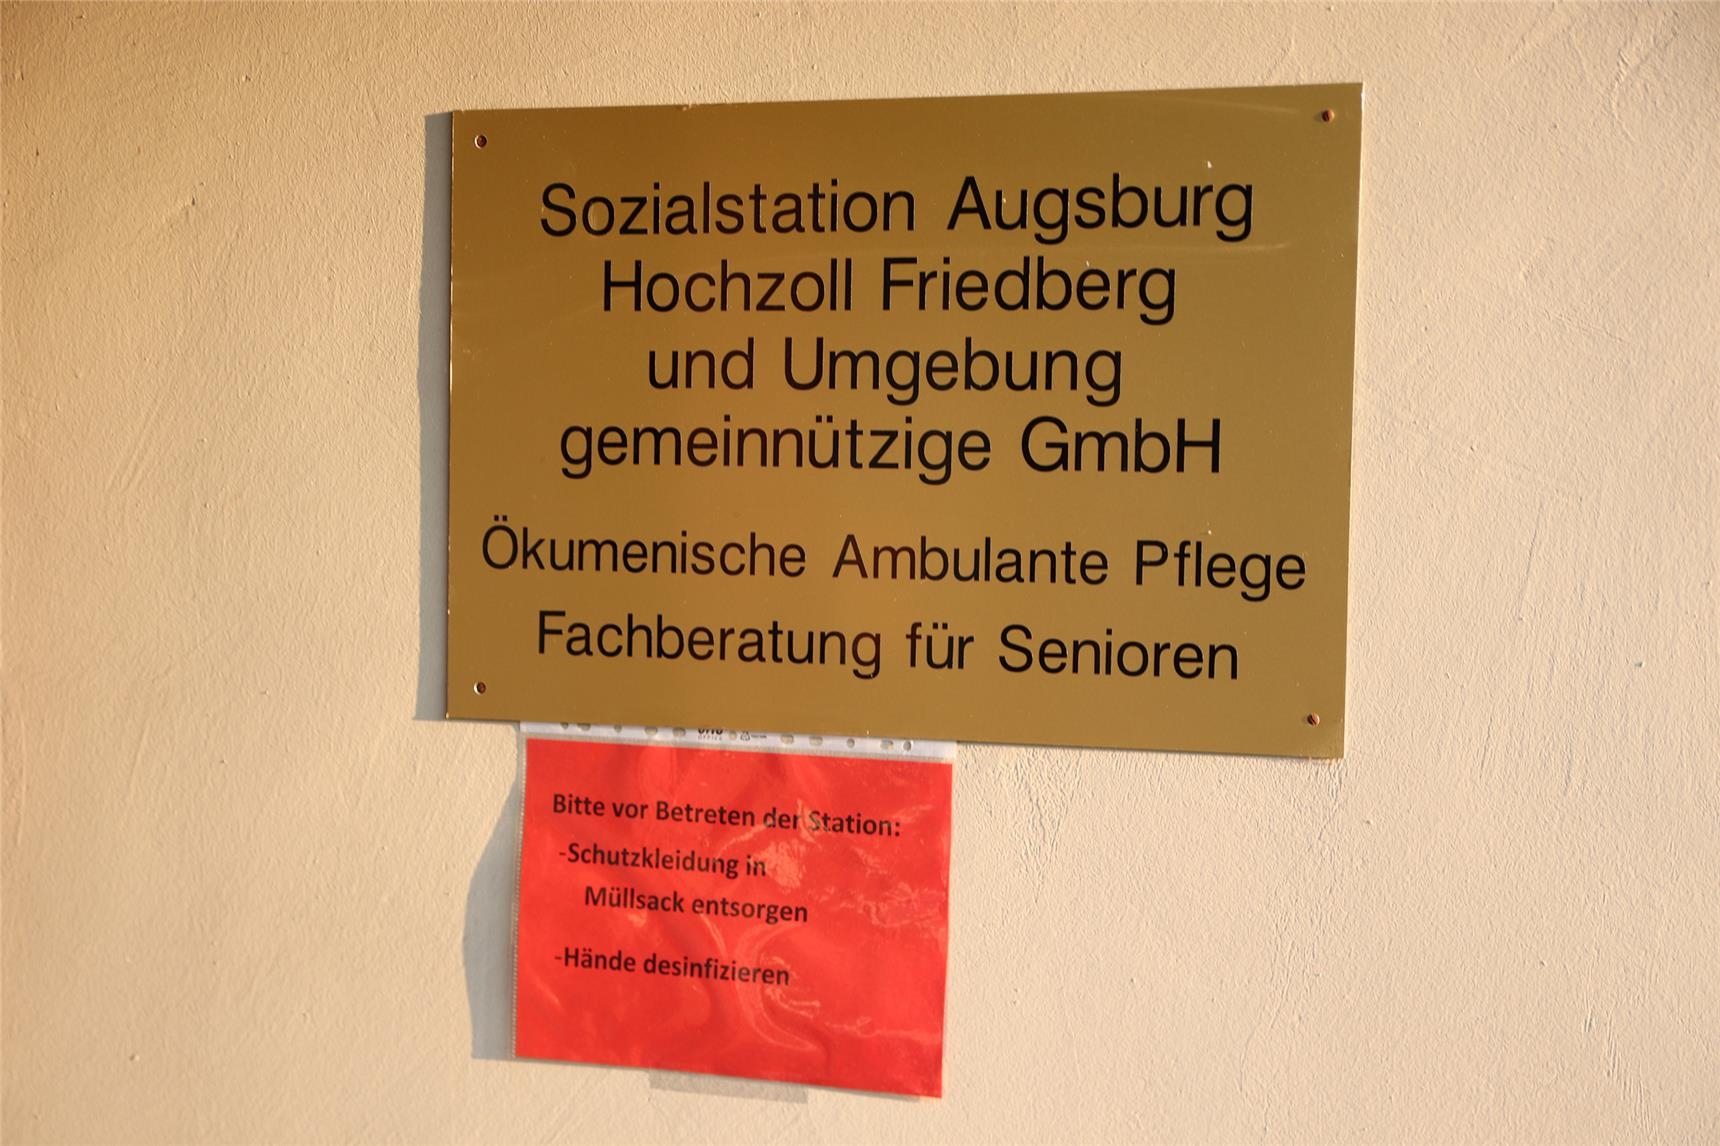 Sozialstation Augsburg-Hochzoll - Hinweis zur Entsorgung der Schutzkleidung - Bildauszug (Bernhard Gattner)